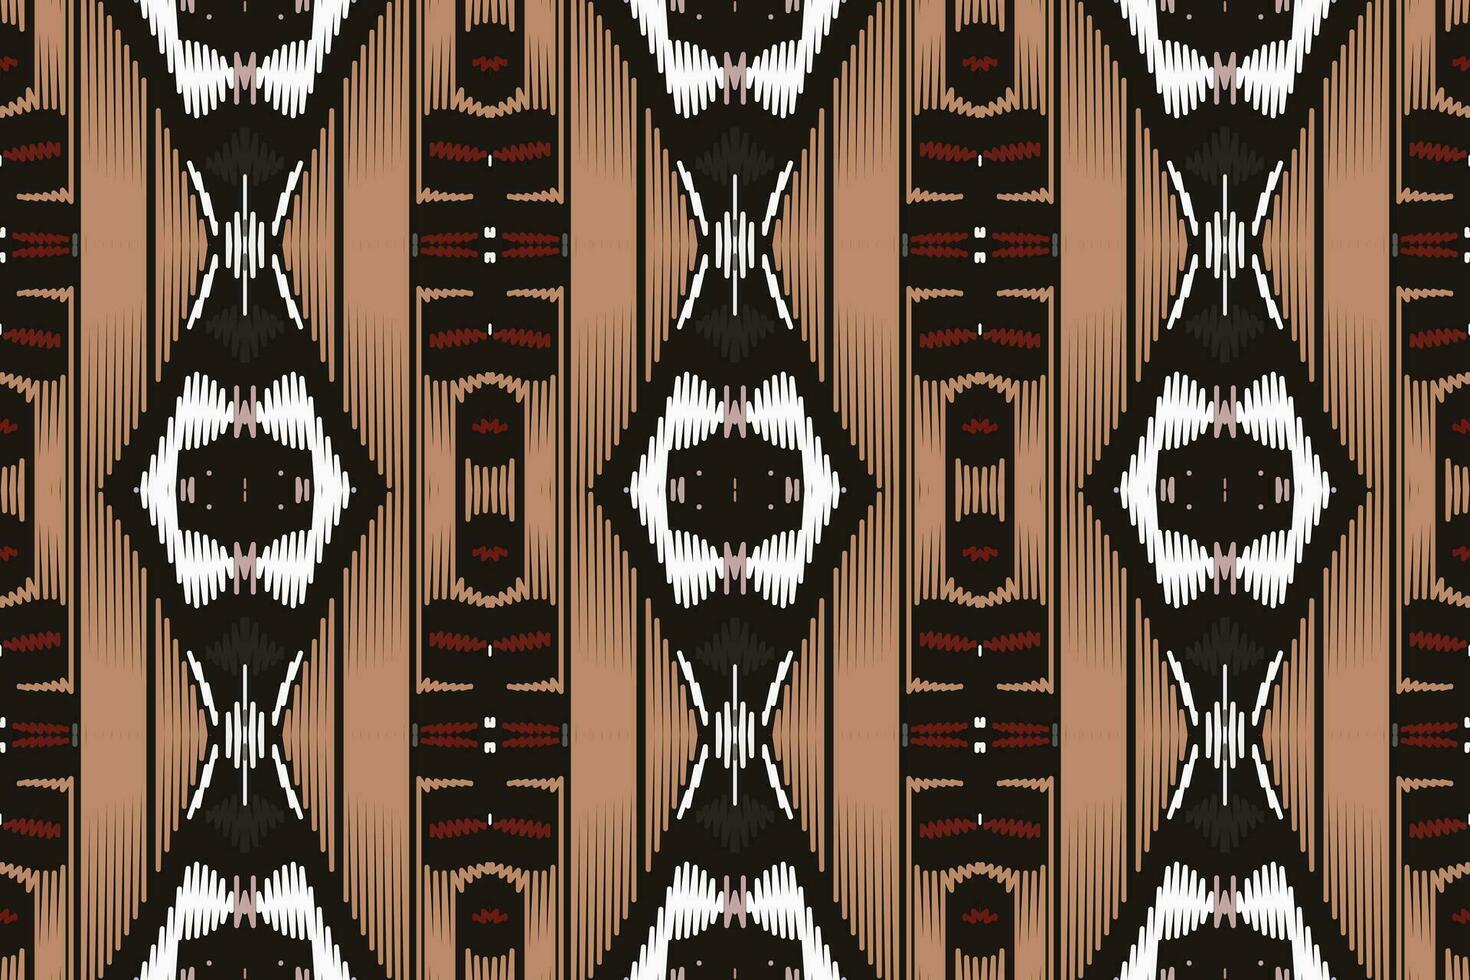 motivo ikat paisley bordado fundo. ikat floral geométrico étnico oriental padronizar tradicional.asteca estilo abstrato vetor ilustração.design para textura,tecido,vestuário,embrulho,sarongue.